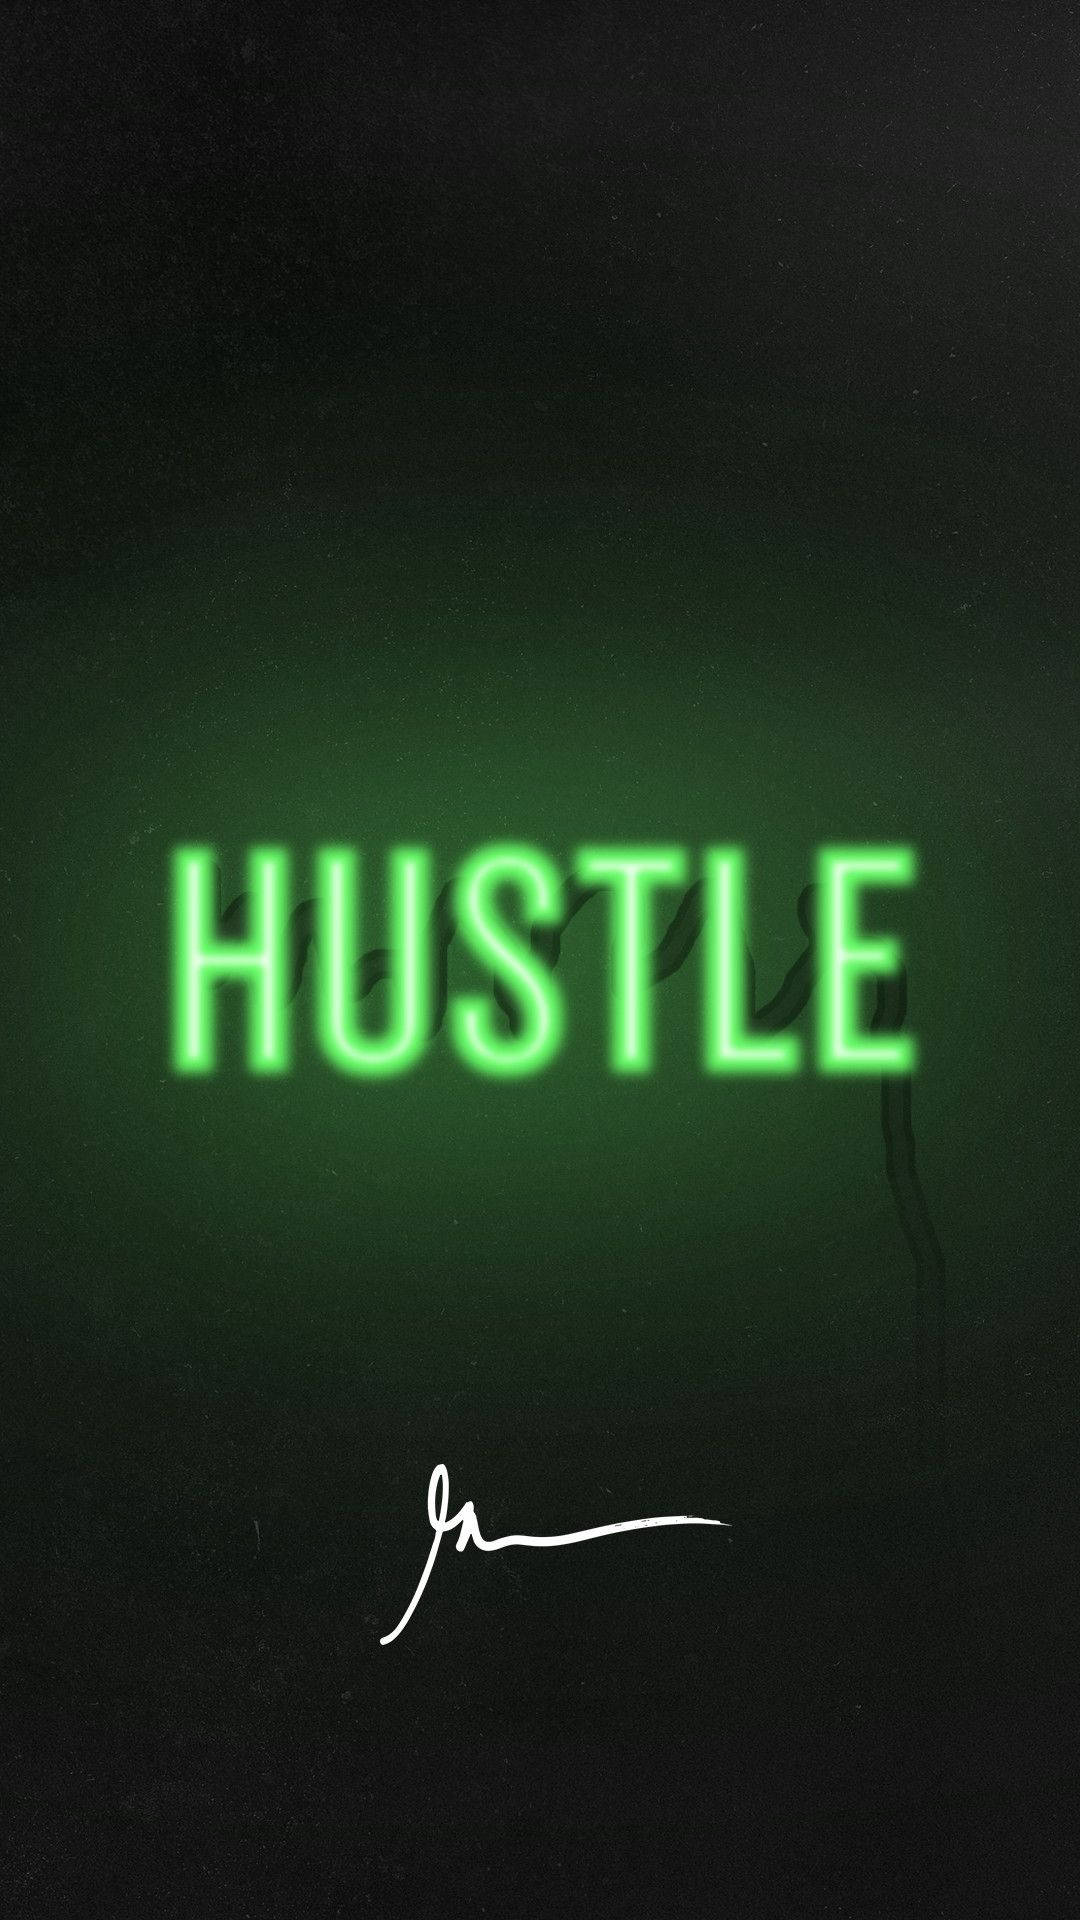 Hustle Plain Green Background